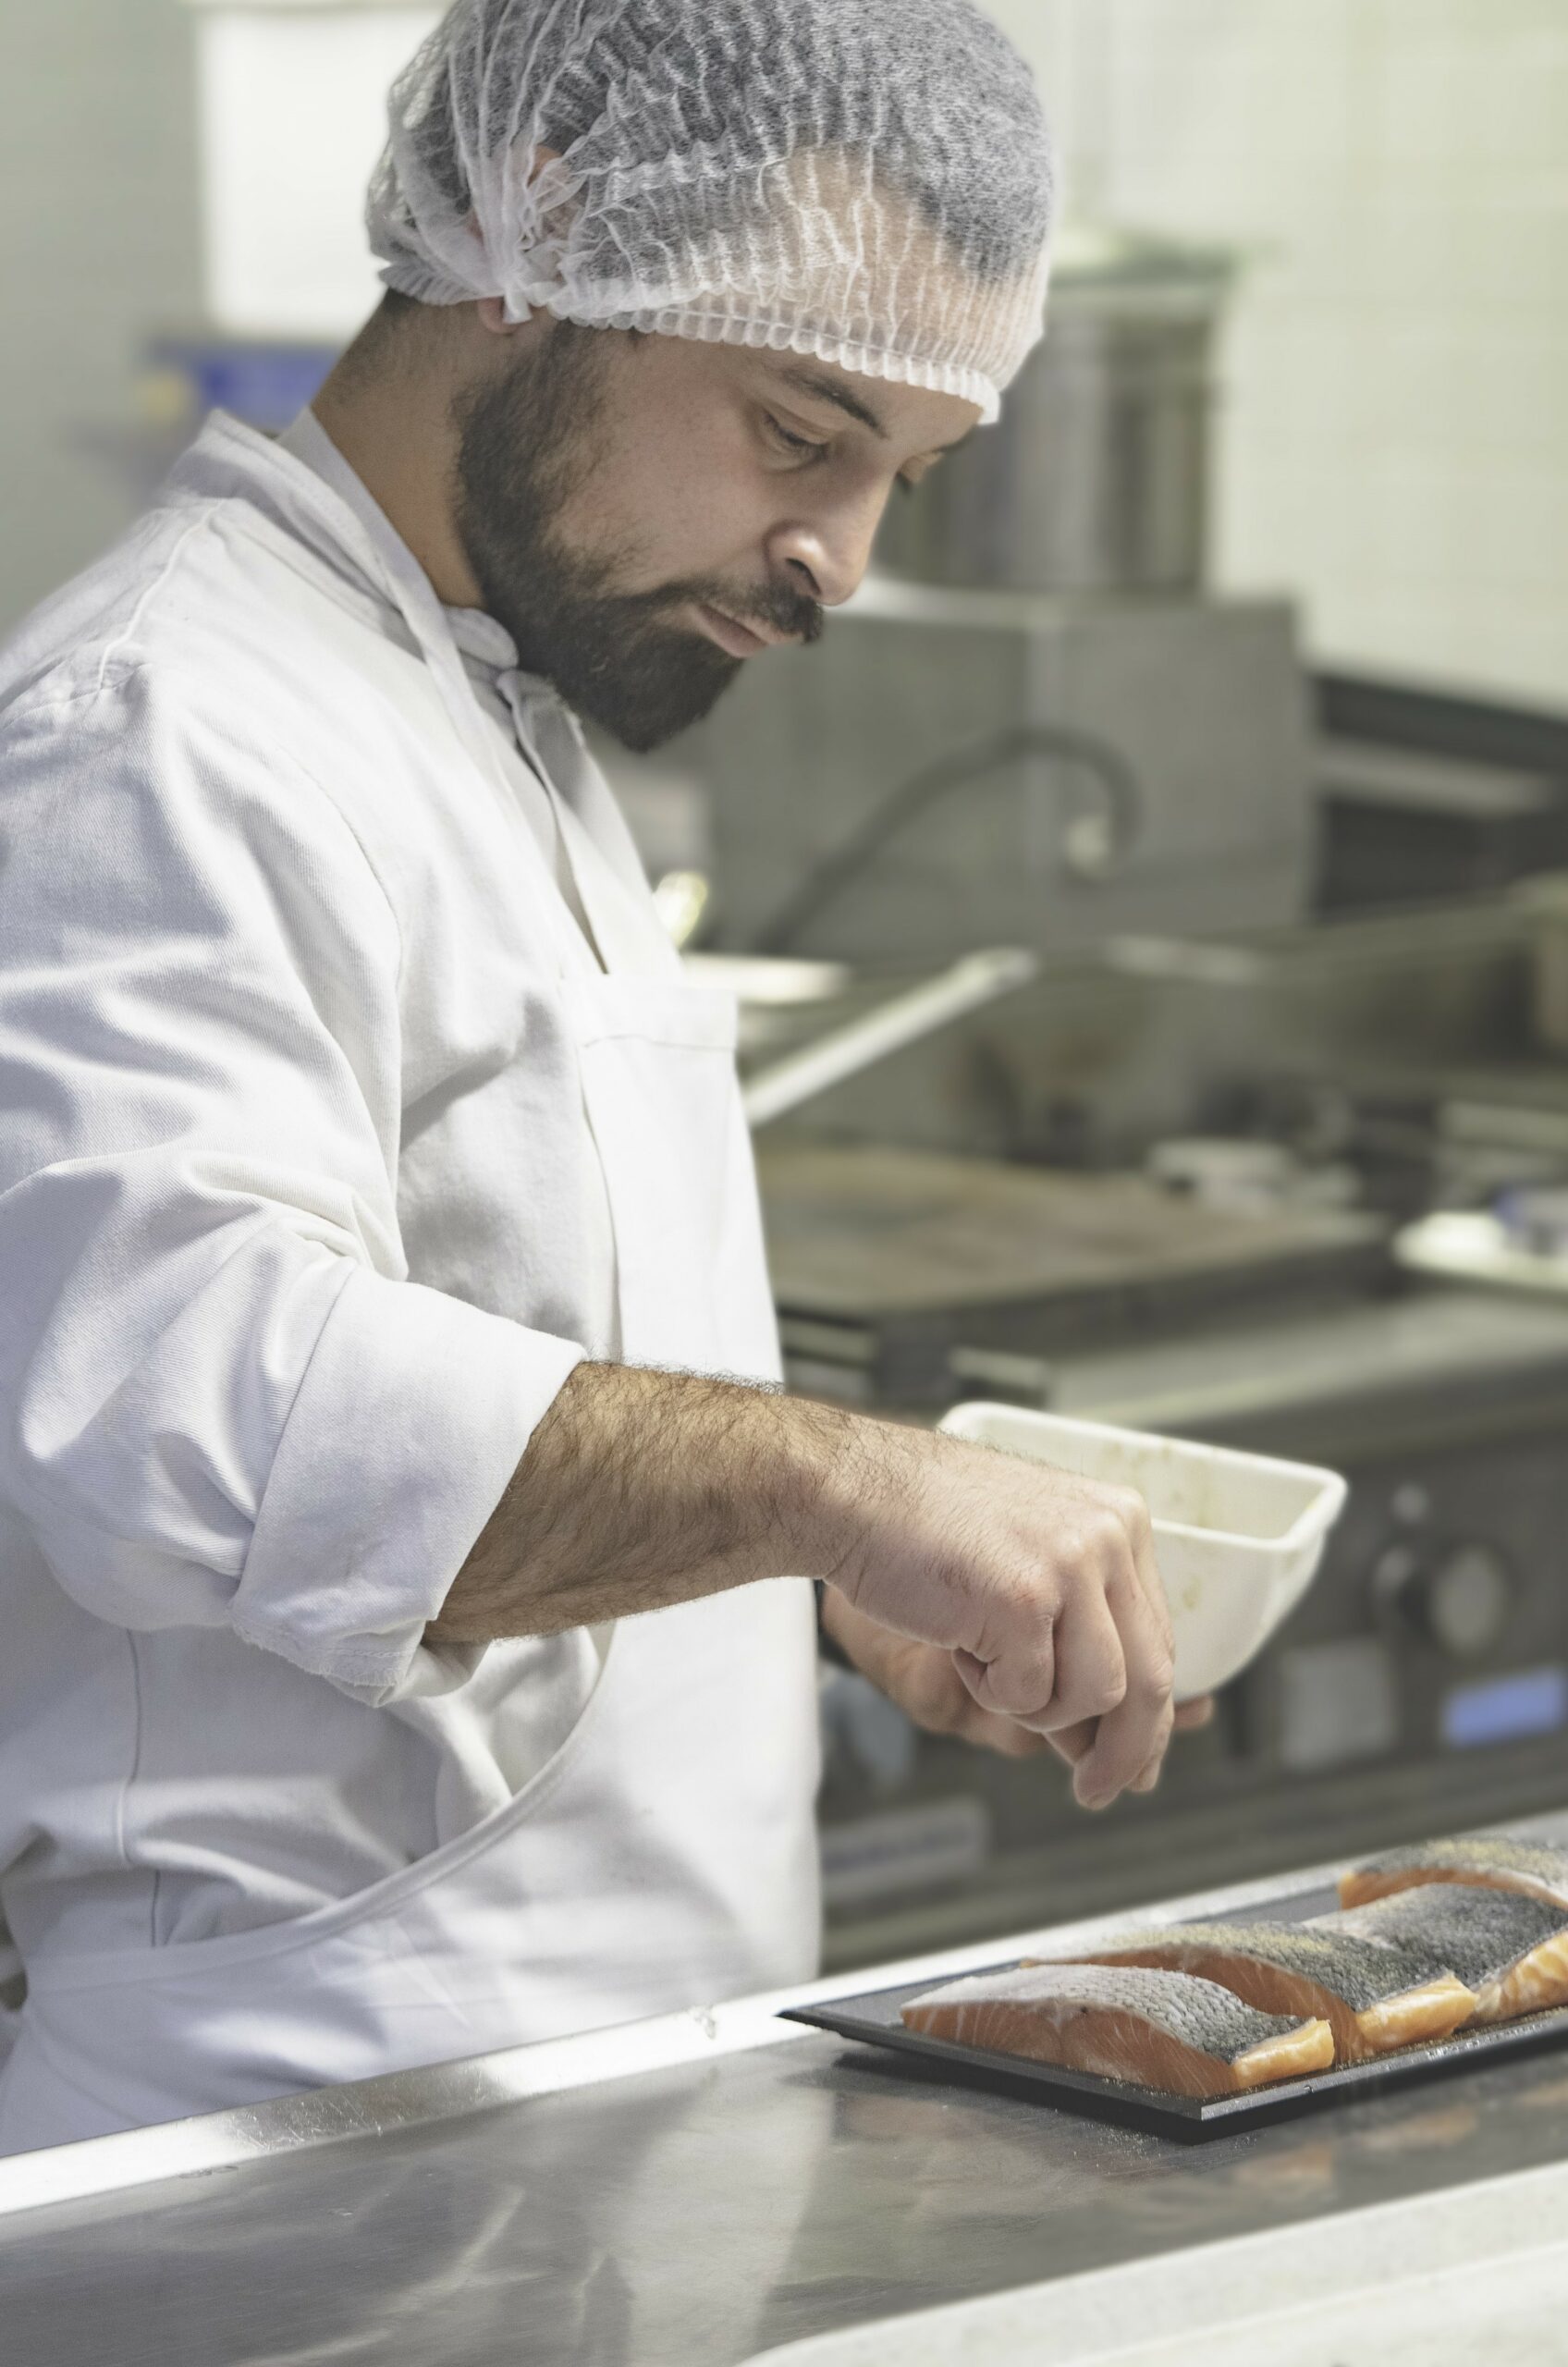 Au commencement de tout met préparé par un chef, le commis de cuisine s’assure de la réalisation et de la qualité des préparations de base.​